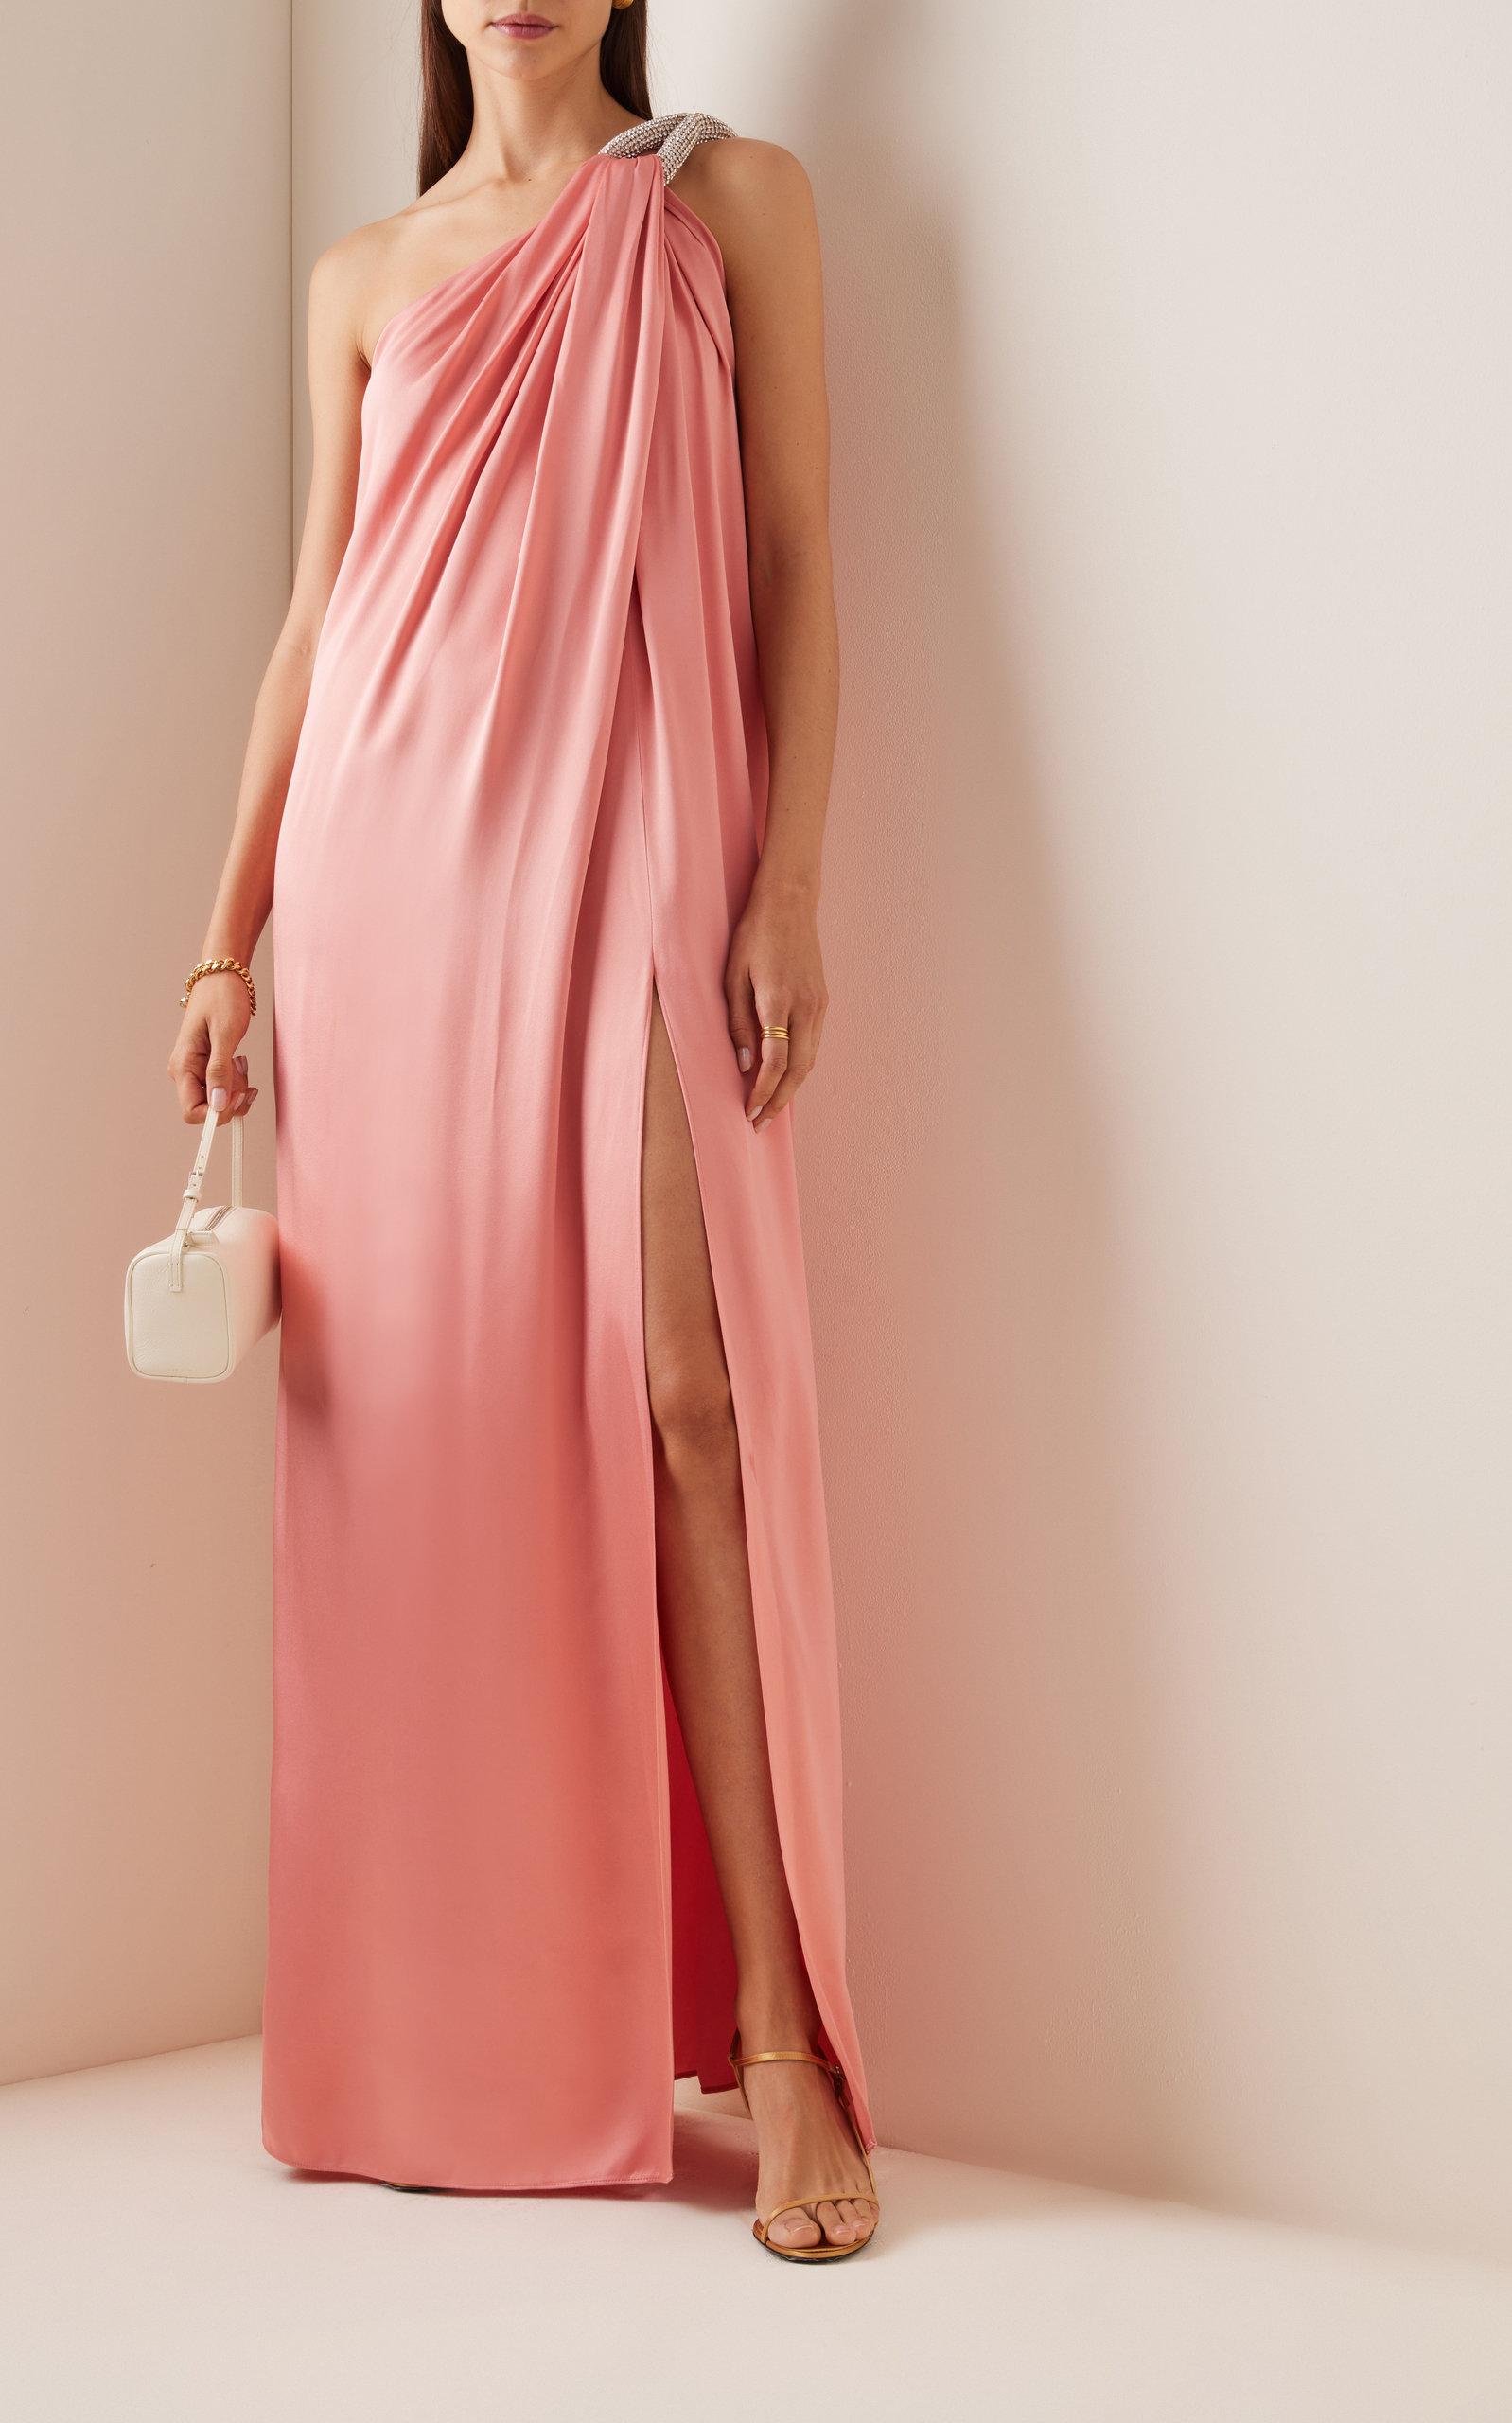 Stella McCartney One-shoulder Satin Gown in Pink | Lyst